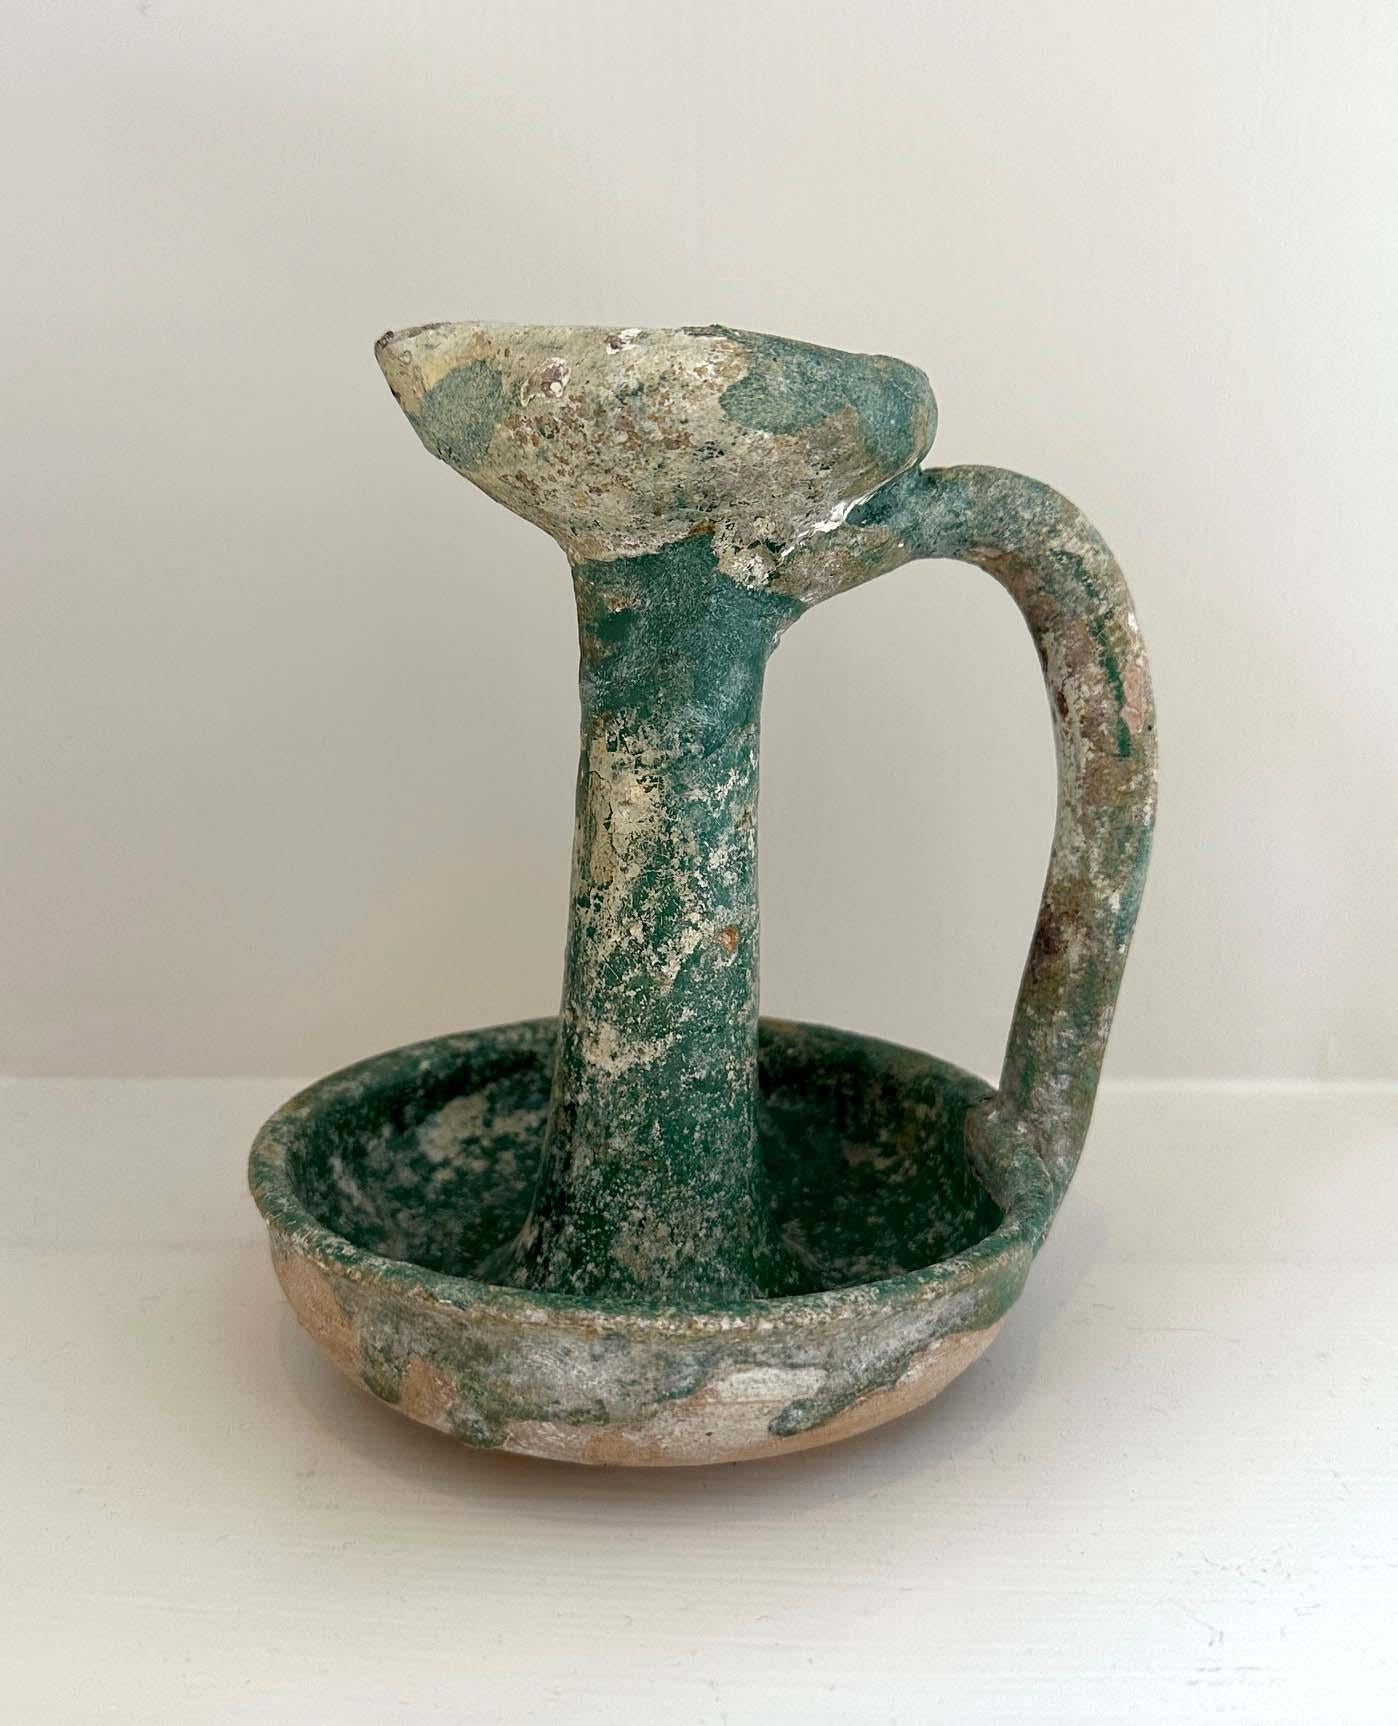 Collection de quatre lampes à huile en poterie vernissée de la Perse ancienne provenant d'une collection américaine. Il s'agit de trois lampes à huile à glaçure irisée qui proviendraient de la région de Rhages, en Perse, vers le 13e siècle, et d'une